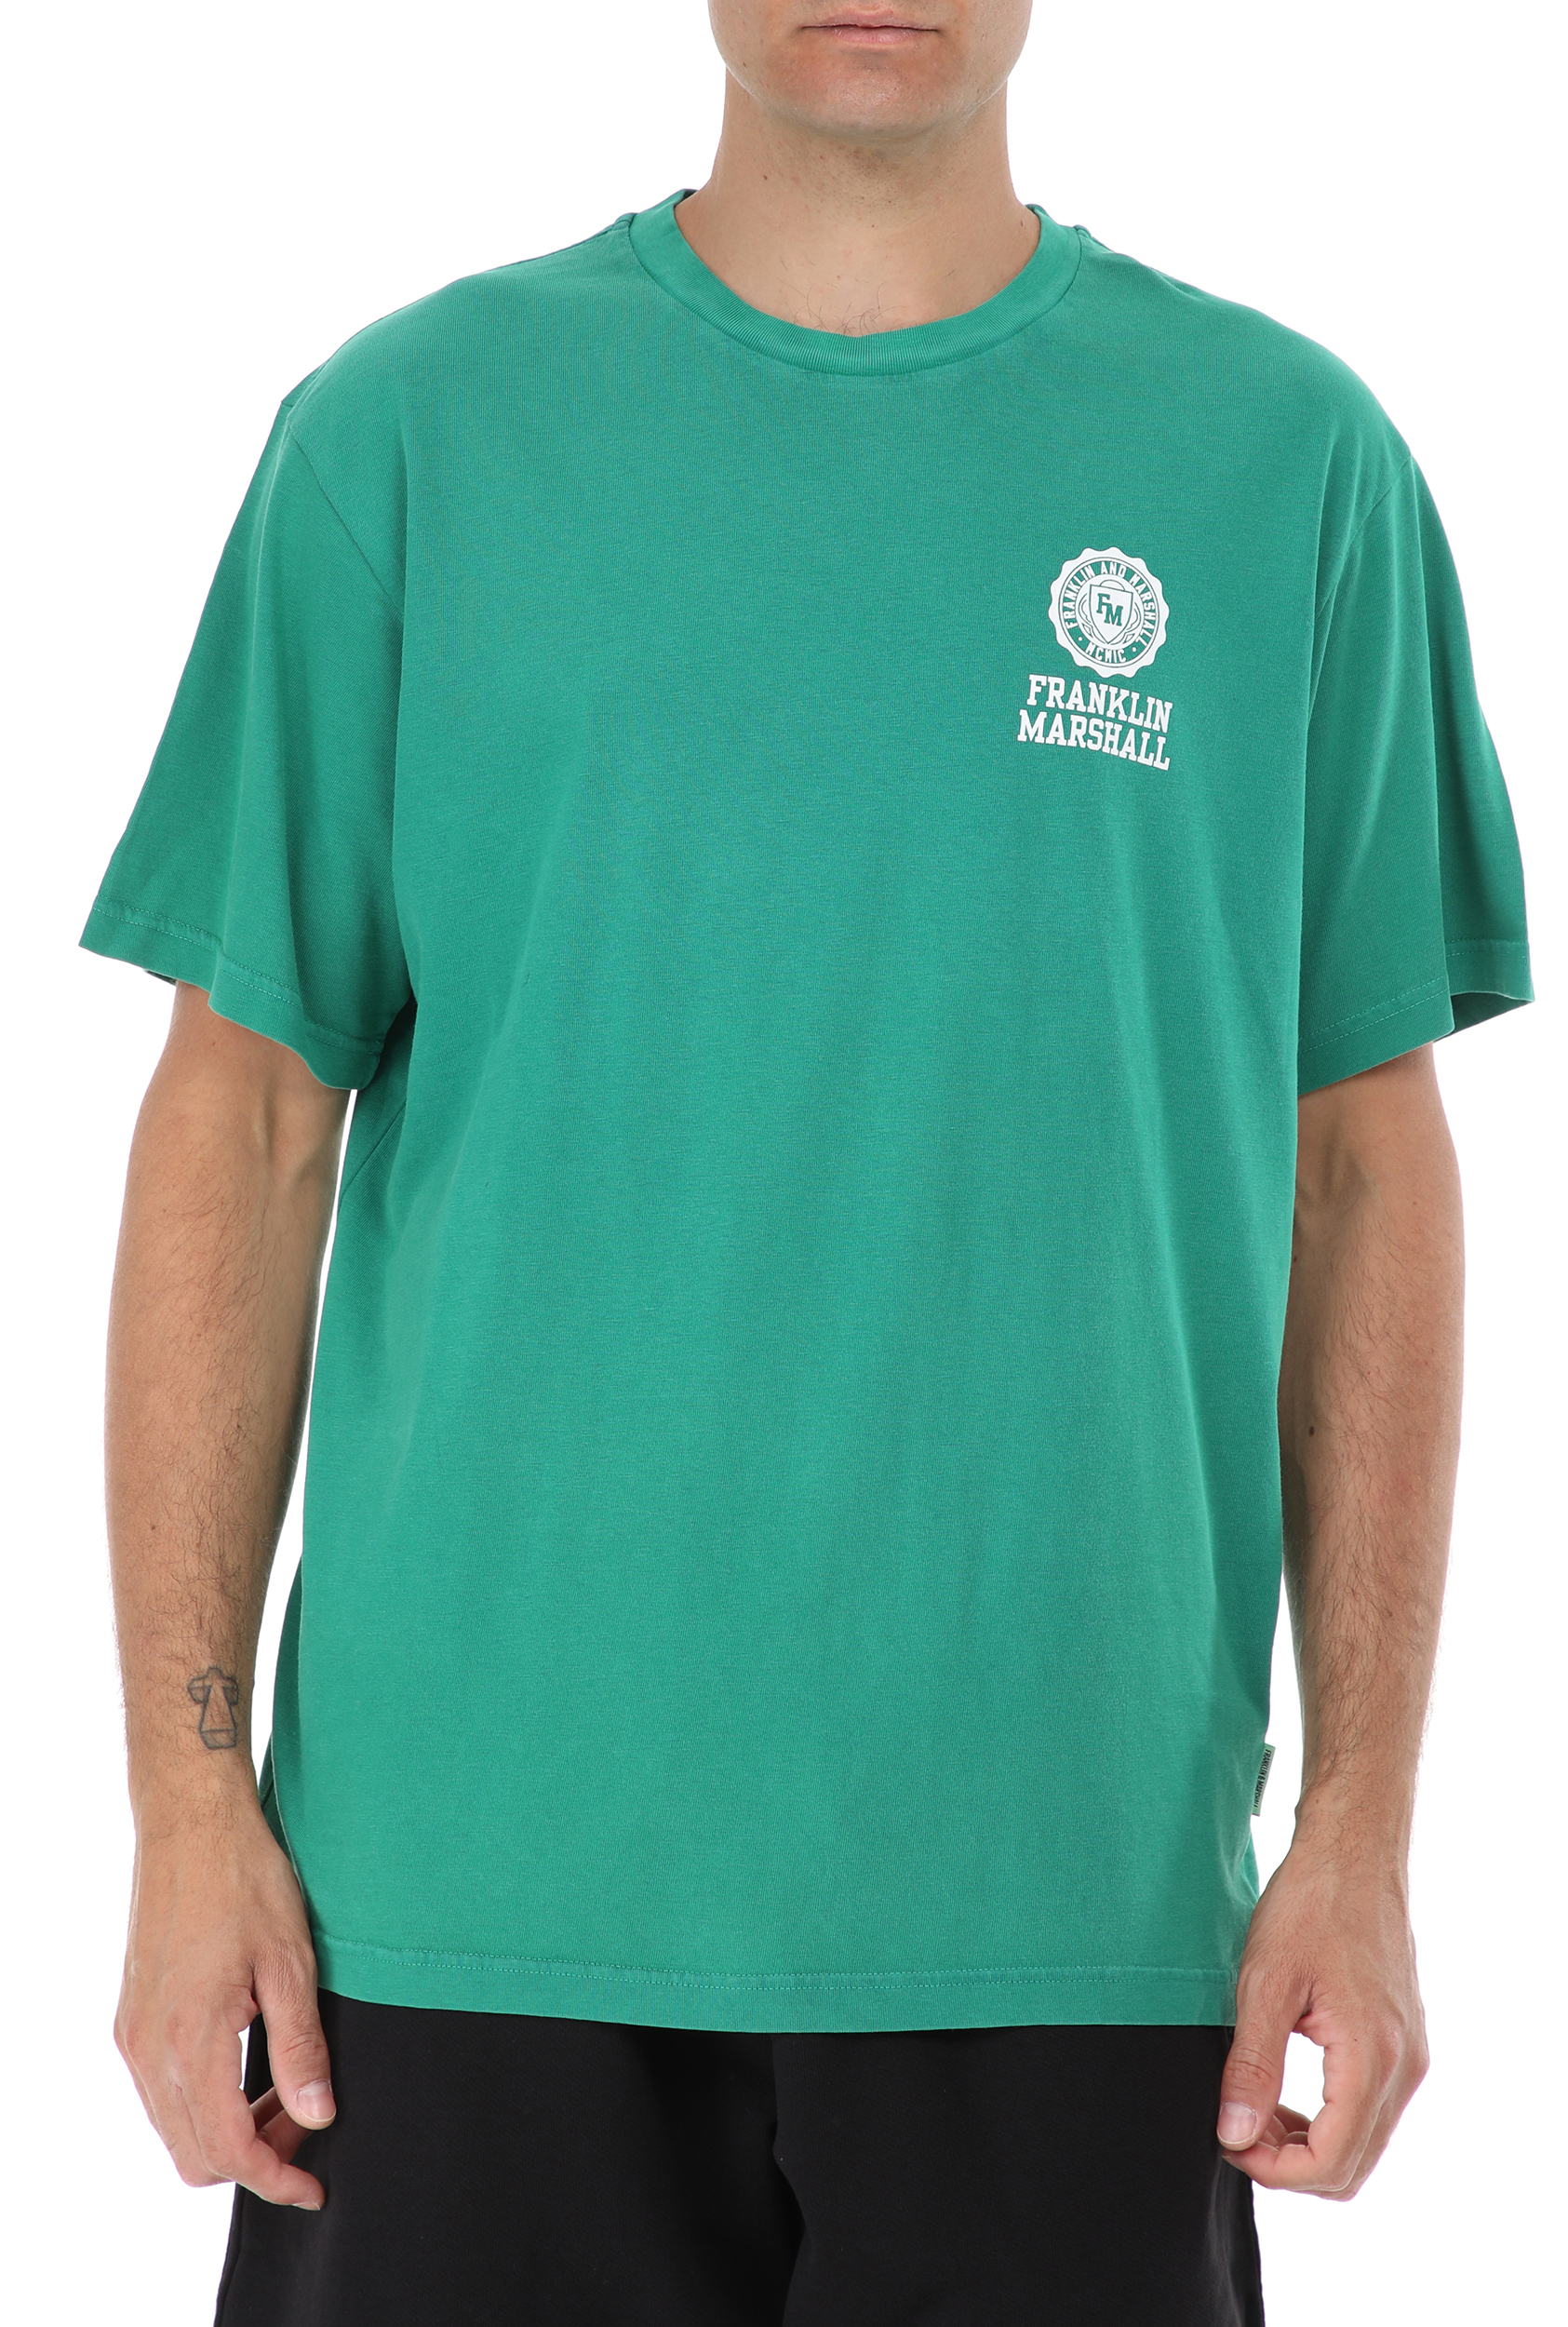 Ανδρικά/Ρούχα/Μπλούζες/Κοντομάνικες FRANKLIN & MARSHALL - Ανδρικό t-shirt FRANKLIN & MARSHALL πράσινο